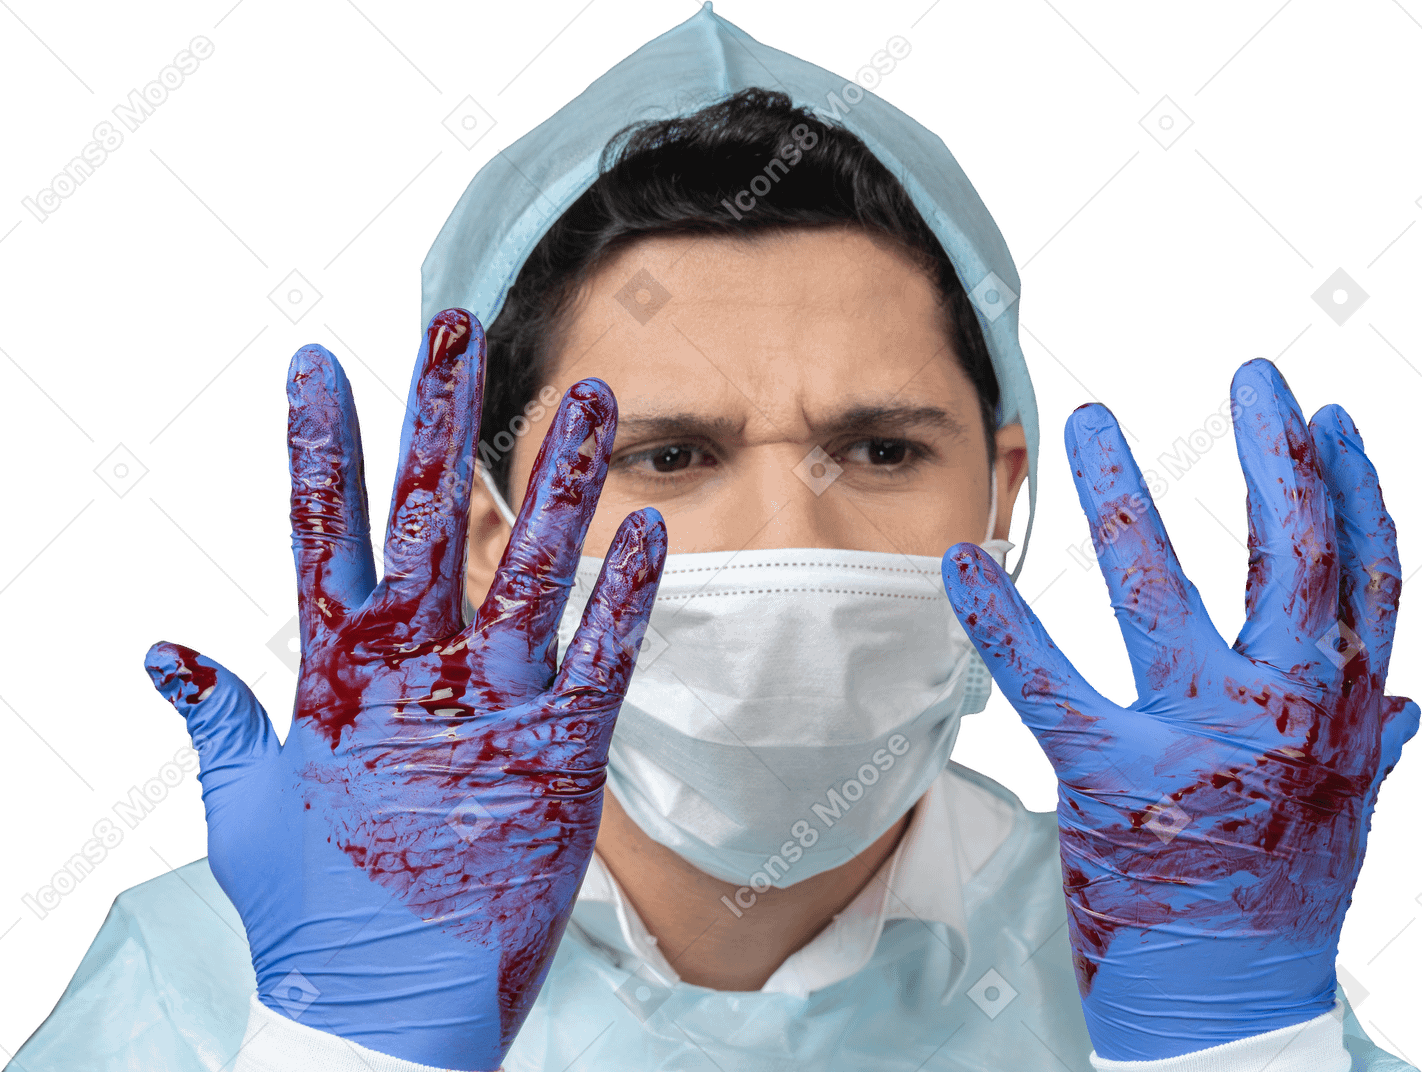 Doctor mirando sus manos cubiertas de sangre